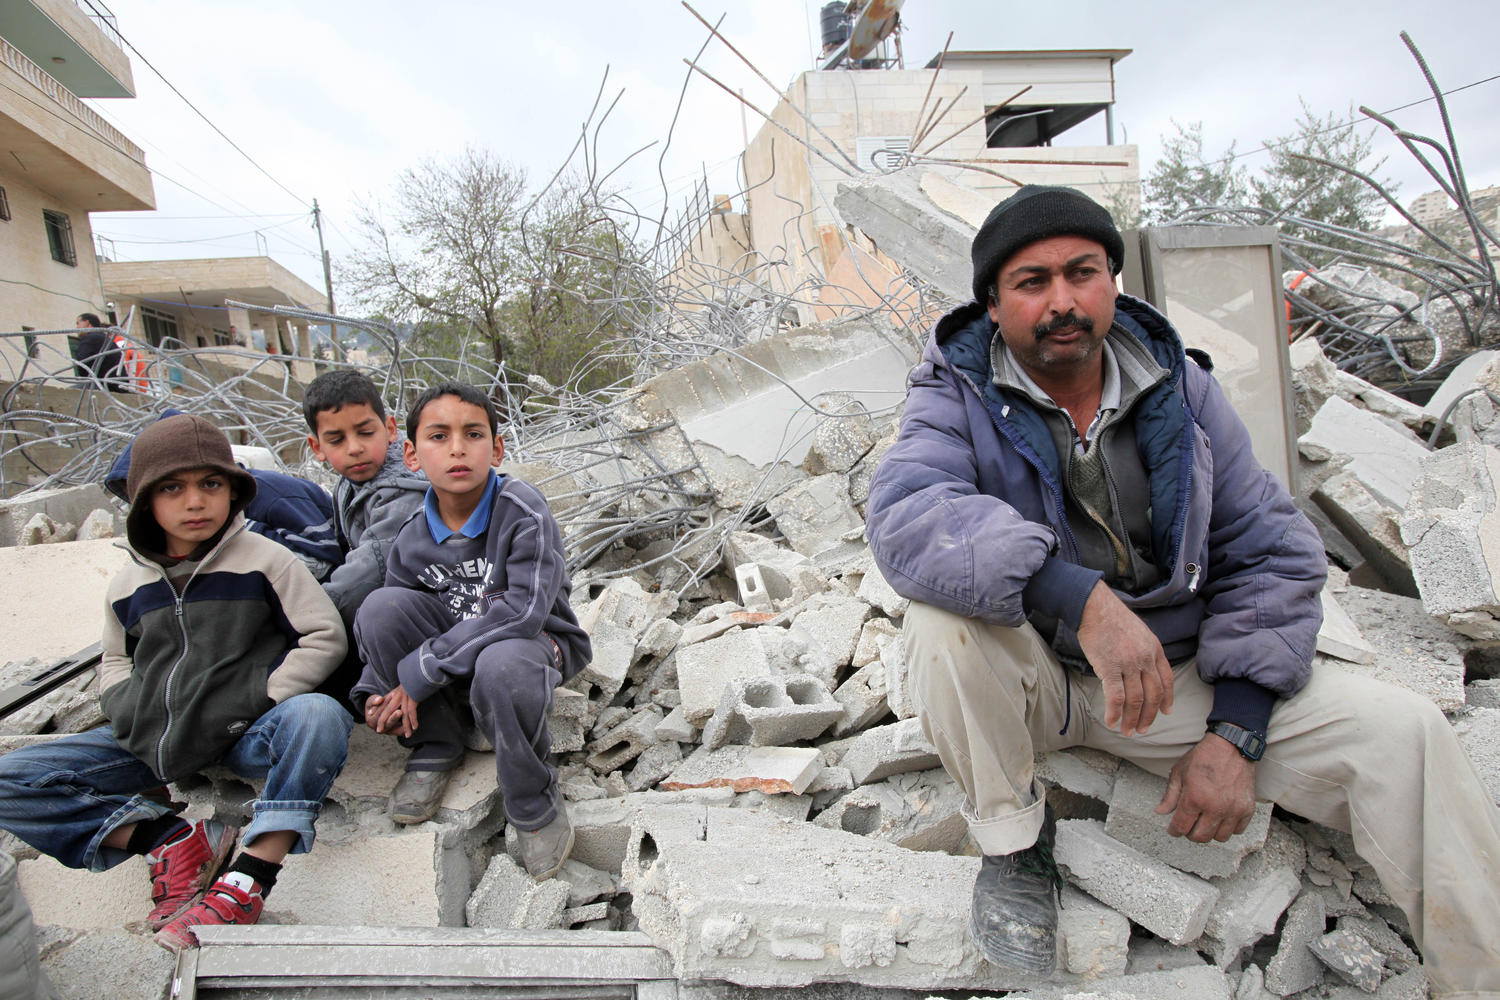 палестинская семья на руинах снесенного дома в Восточном Иерусалиме